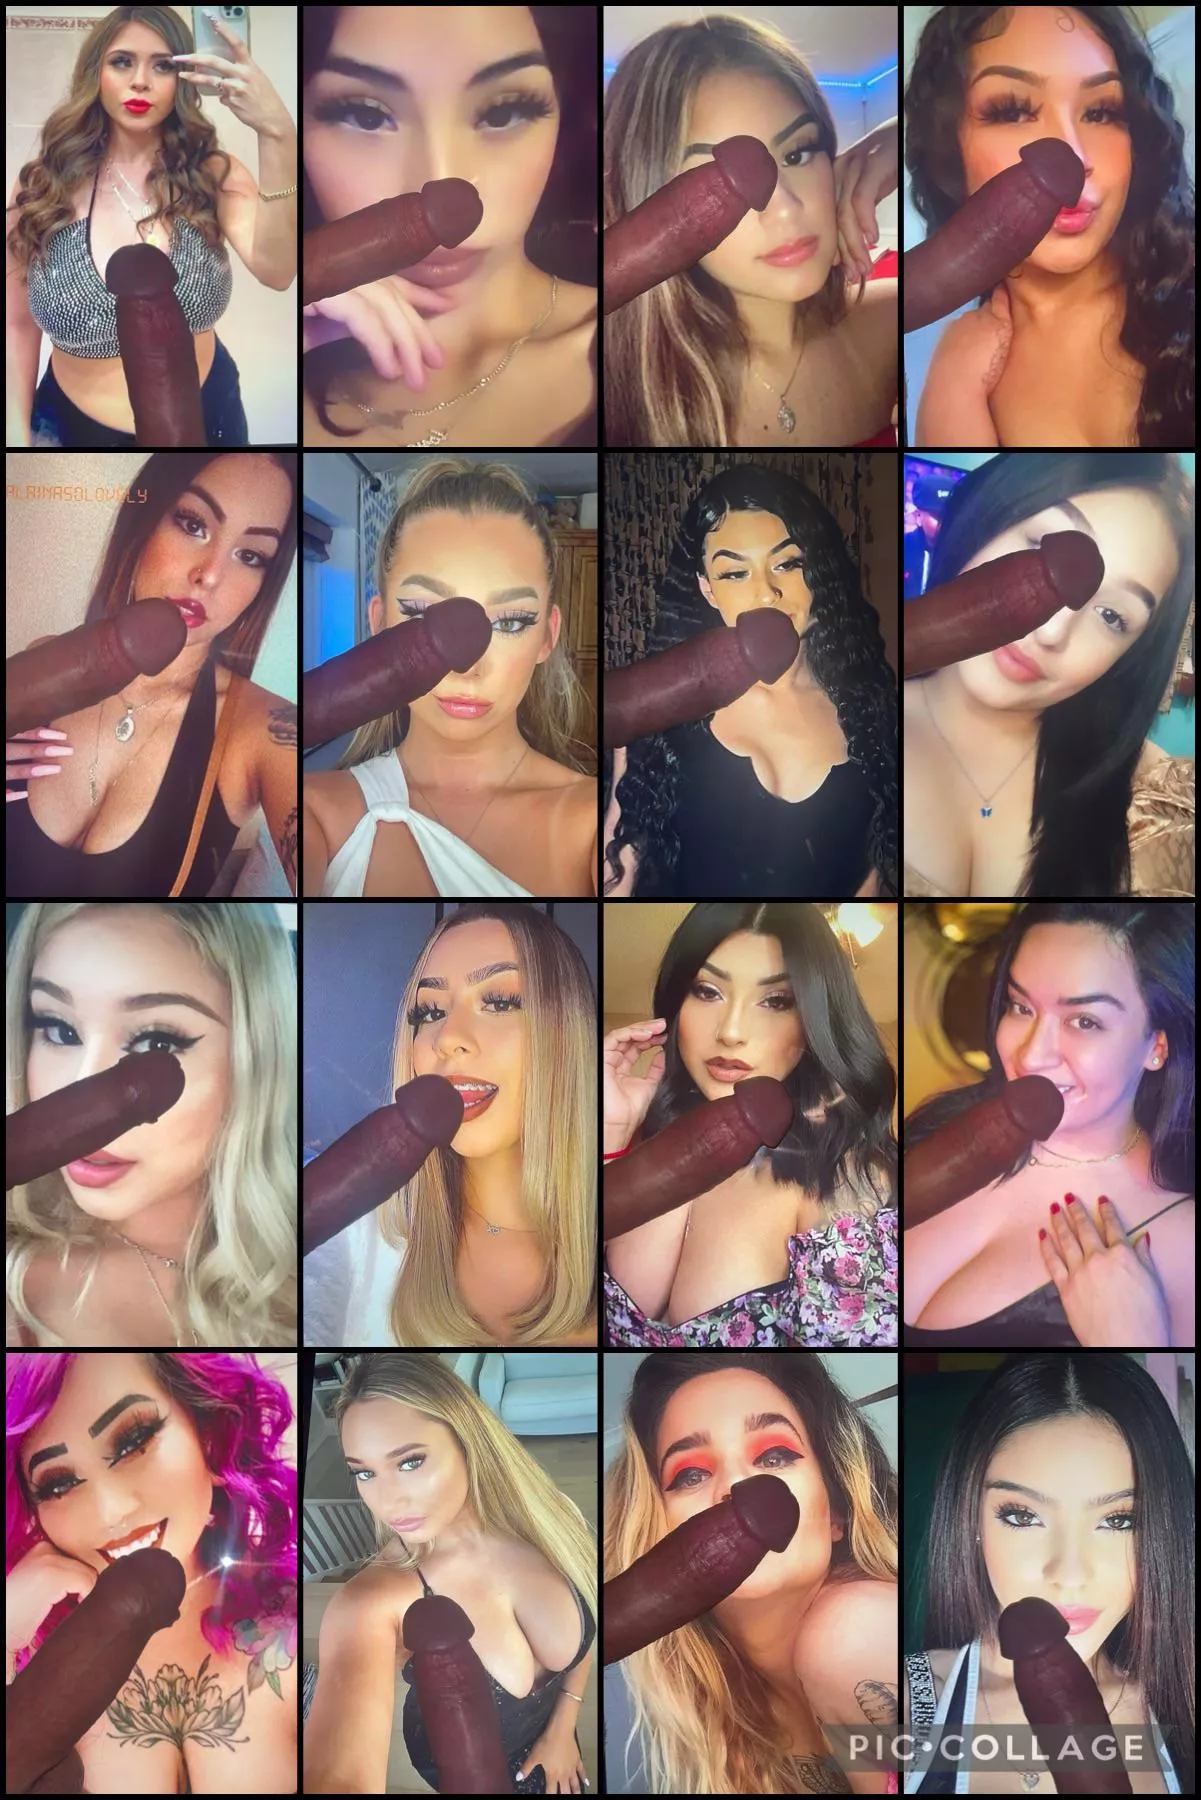 Best Instagram Sluts